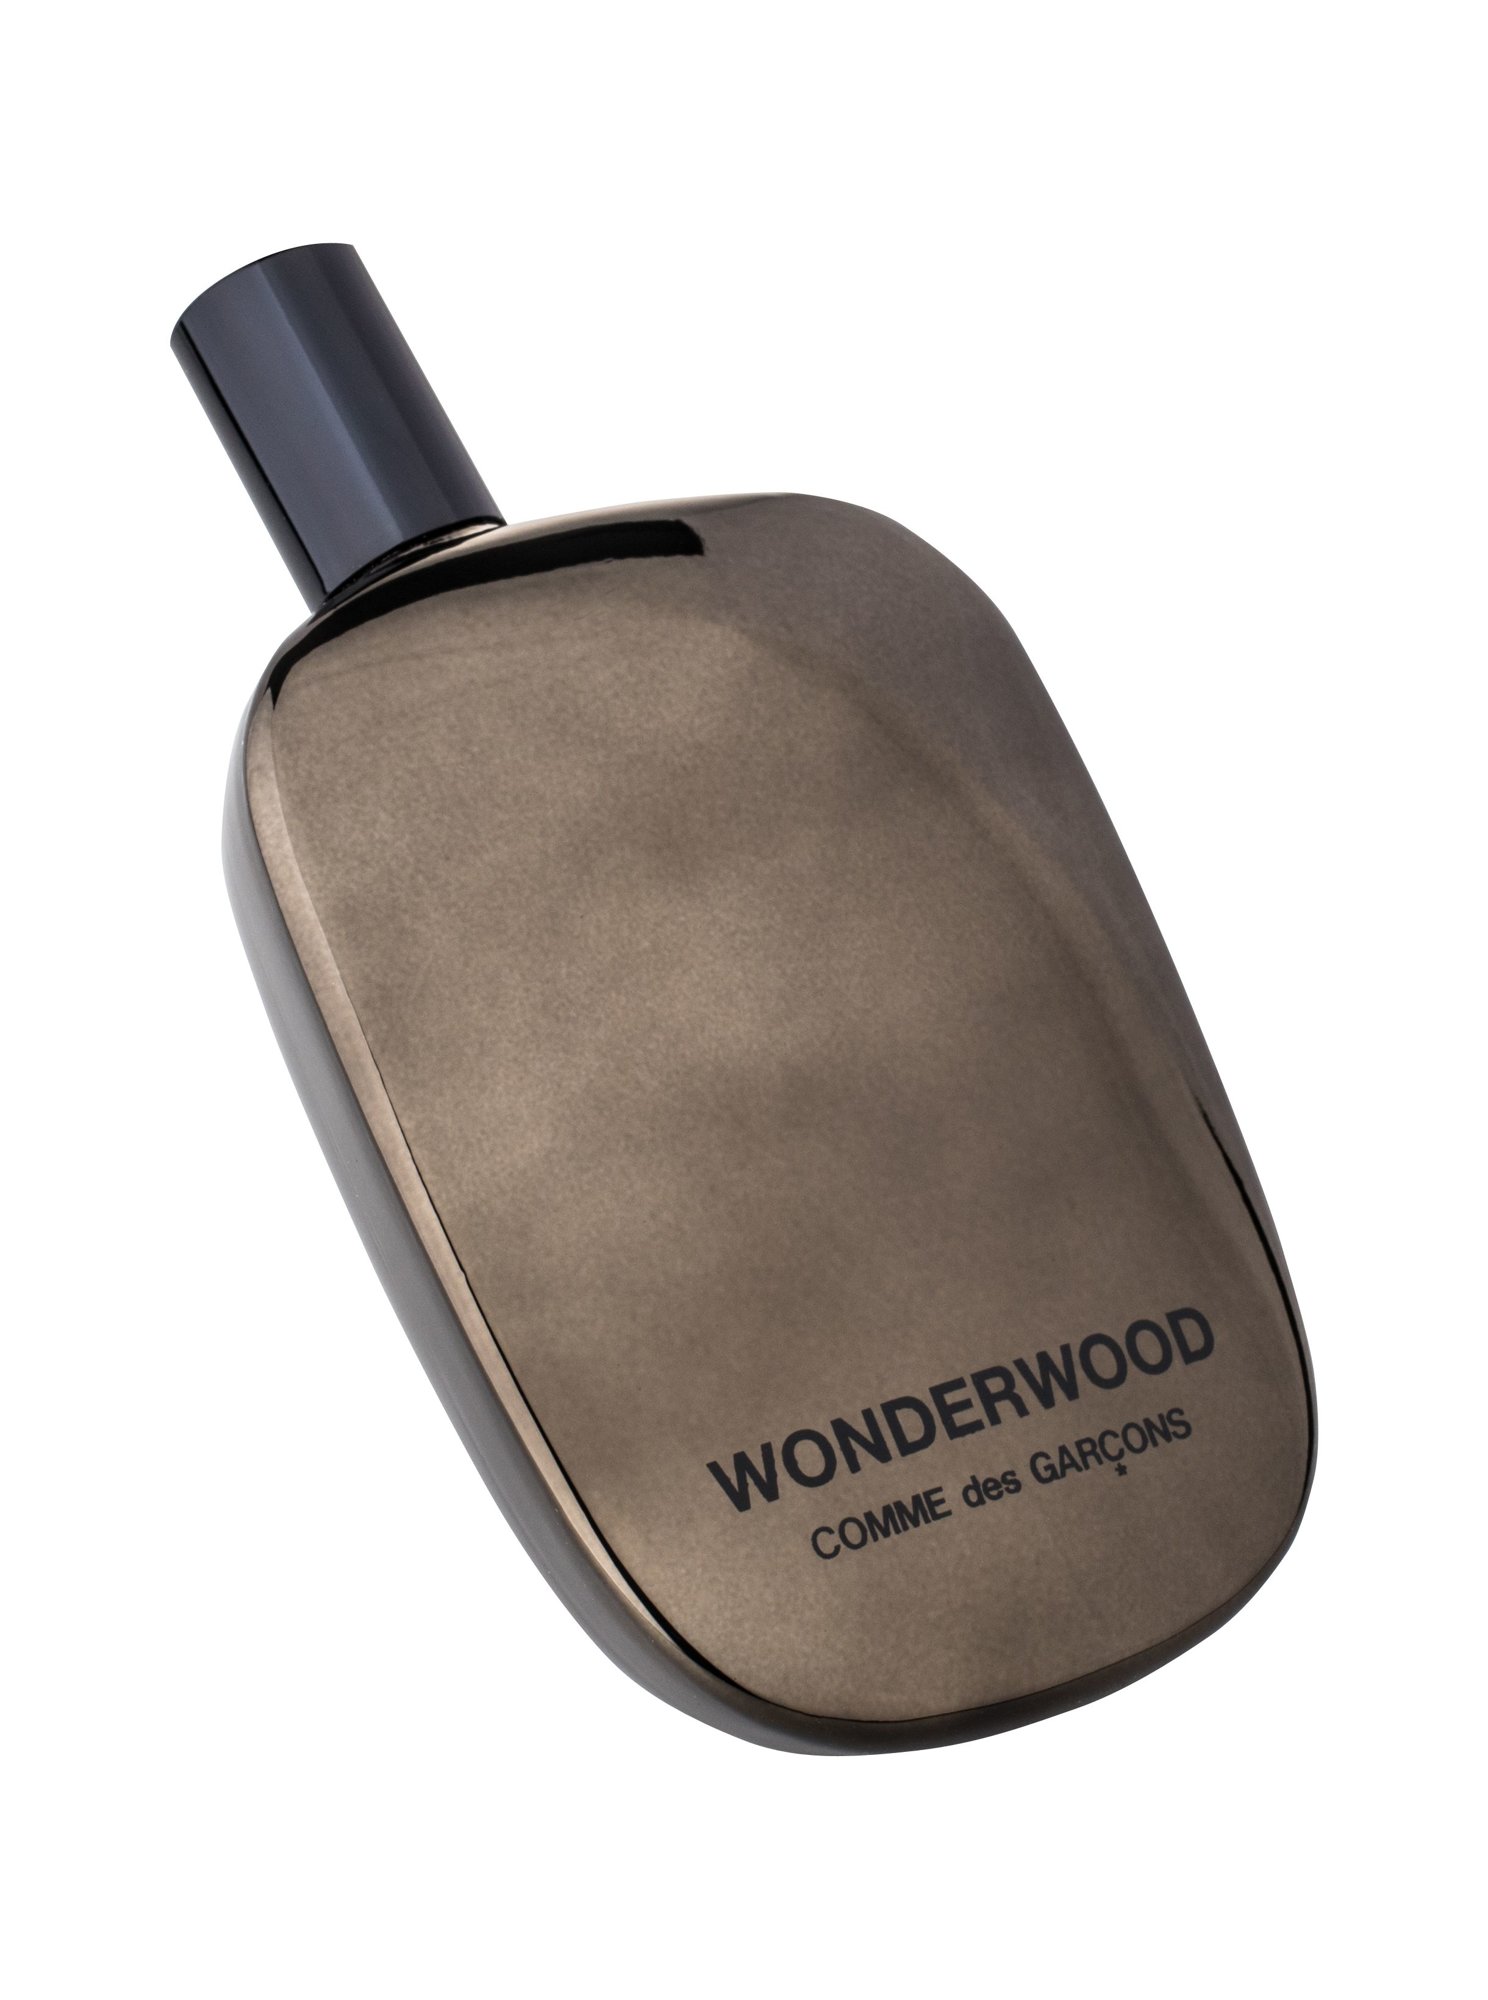 COMME des GARCONS Wonderwood 5 ml NIŠINIAI kvepalų mėginukas (atomaizeris) Vyrams EDP